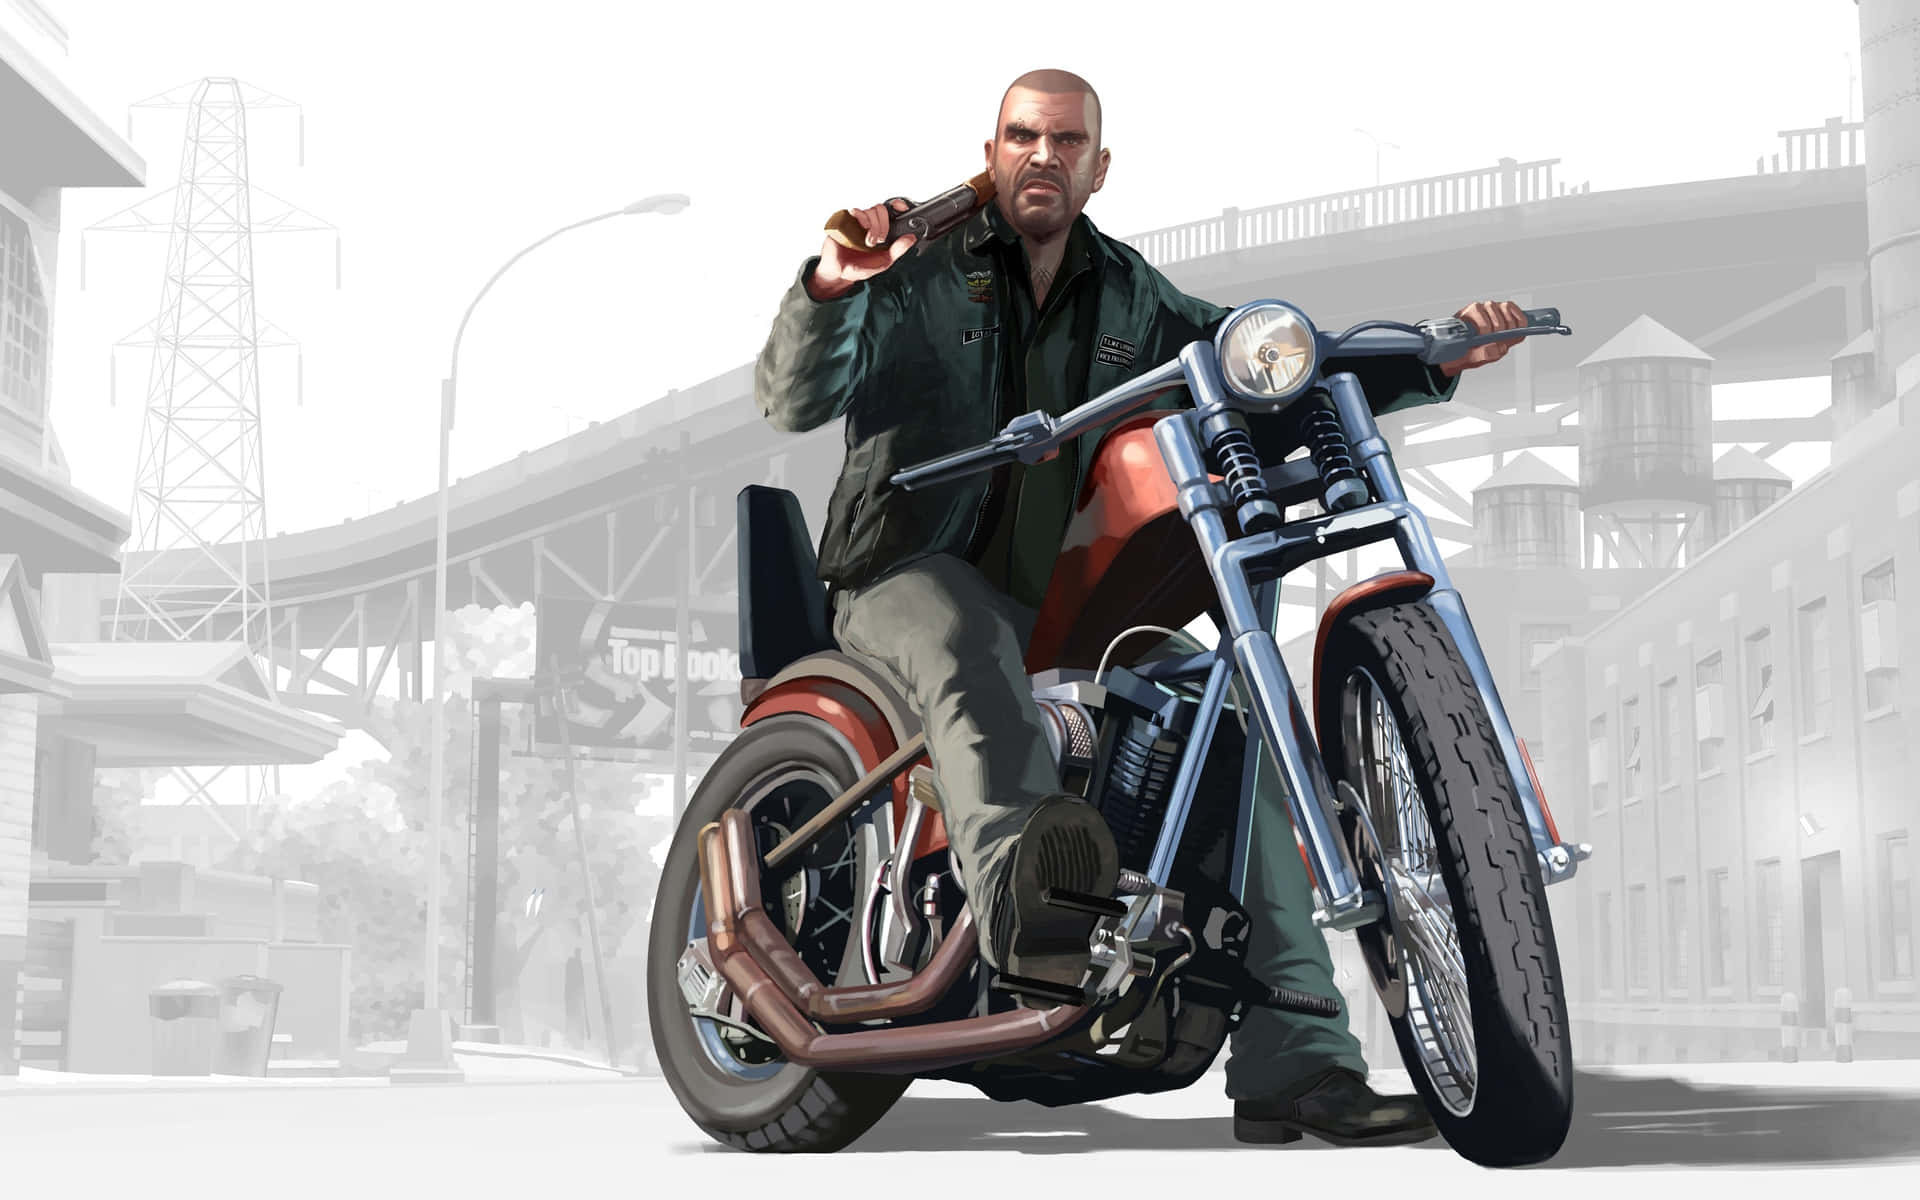 Bildeines Mannes Auf Einem Motorrad Mit Einem Fledermaus-gta-hintergrund